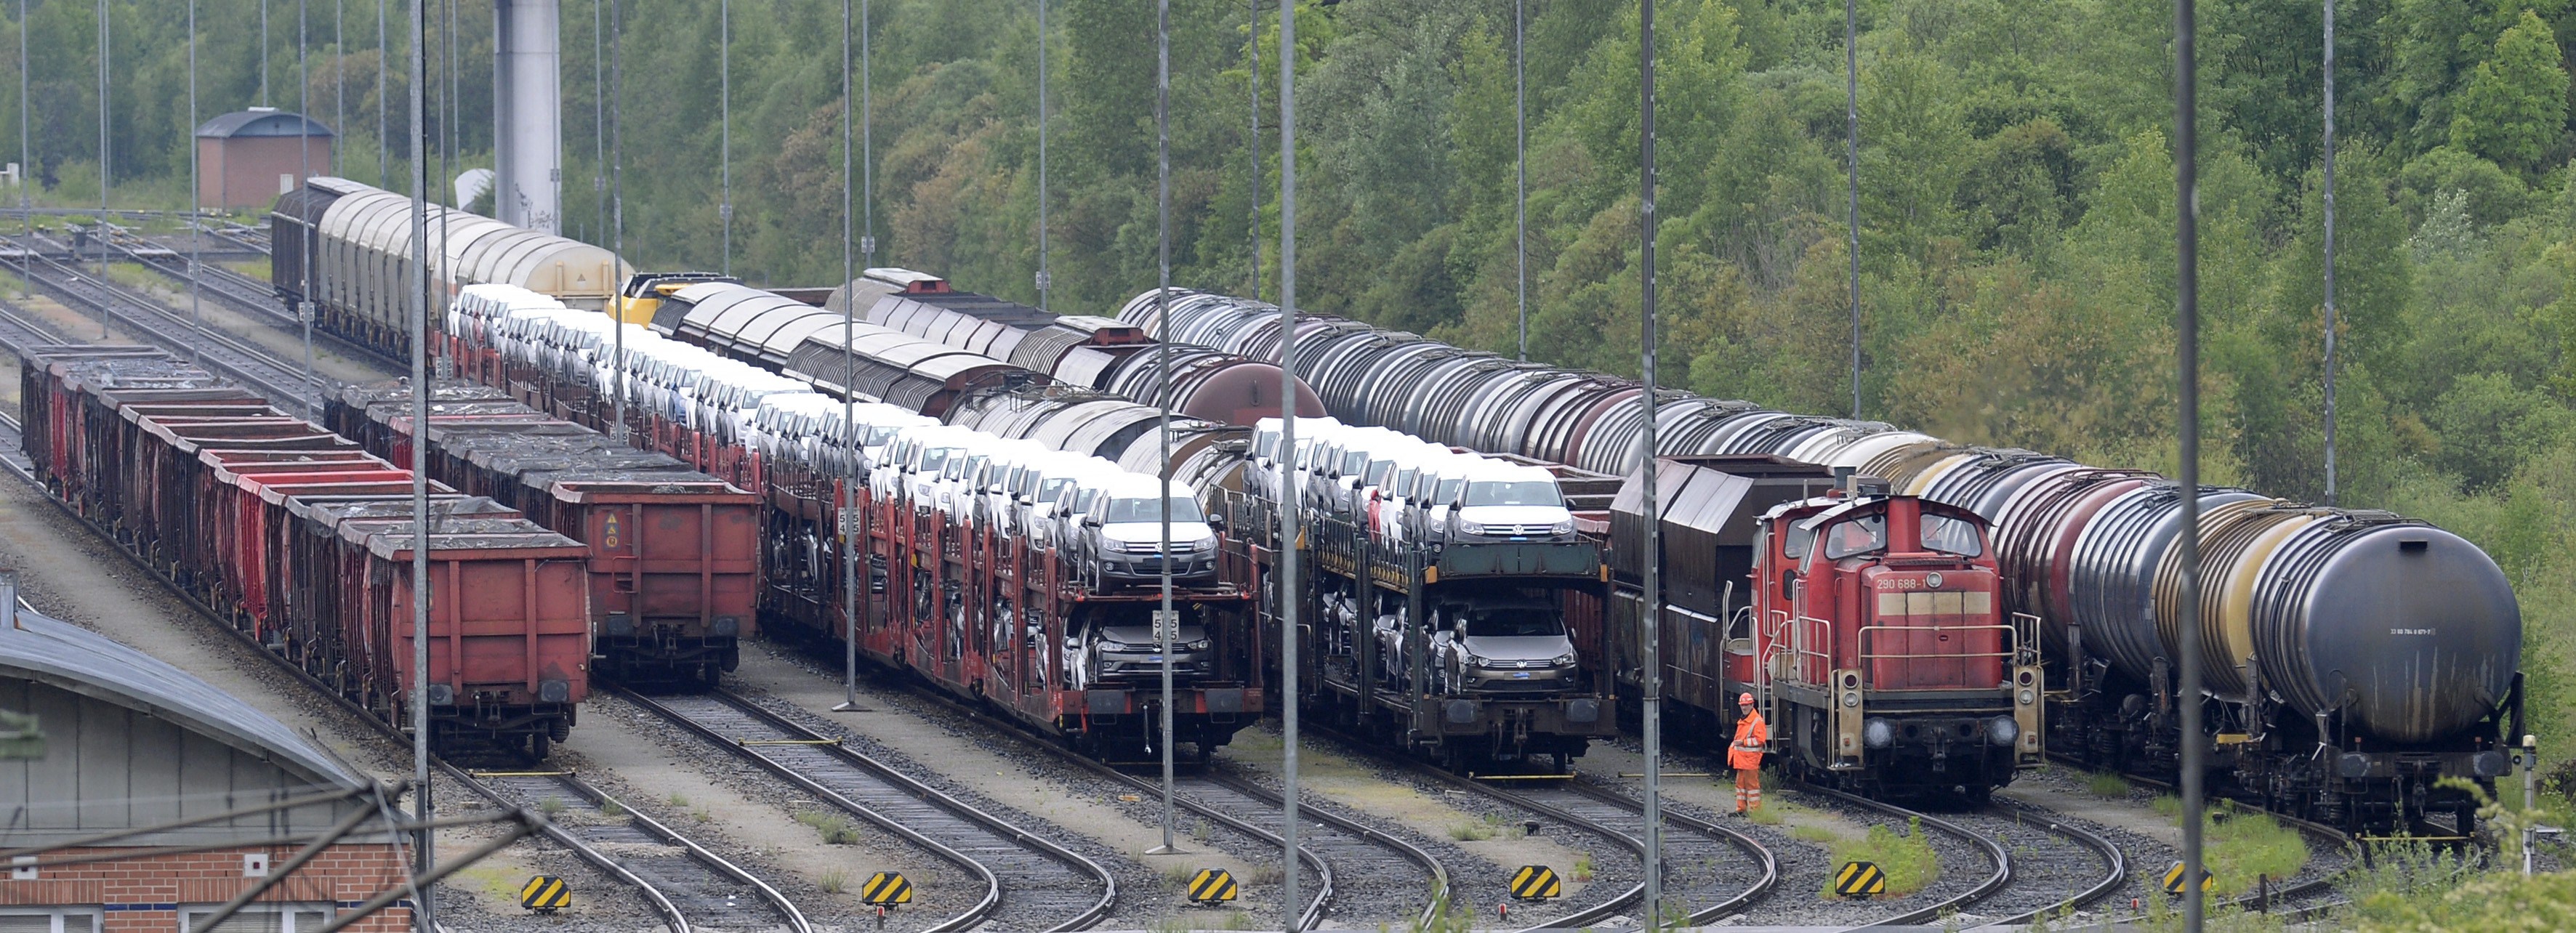 Bahn-Vorstand: Sorge um Vertrauensverlust in die Bahn